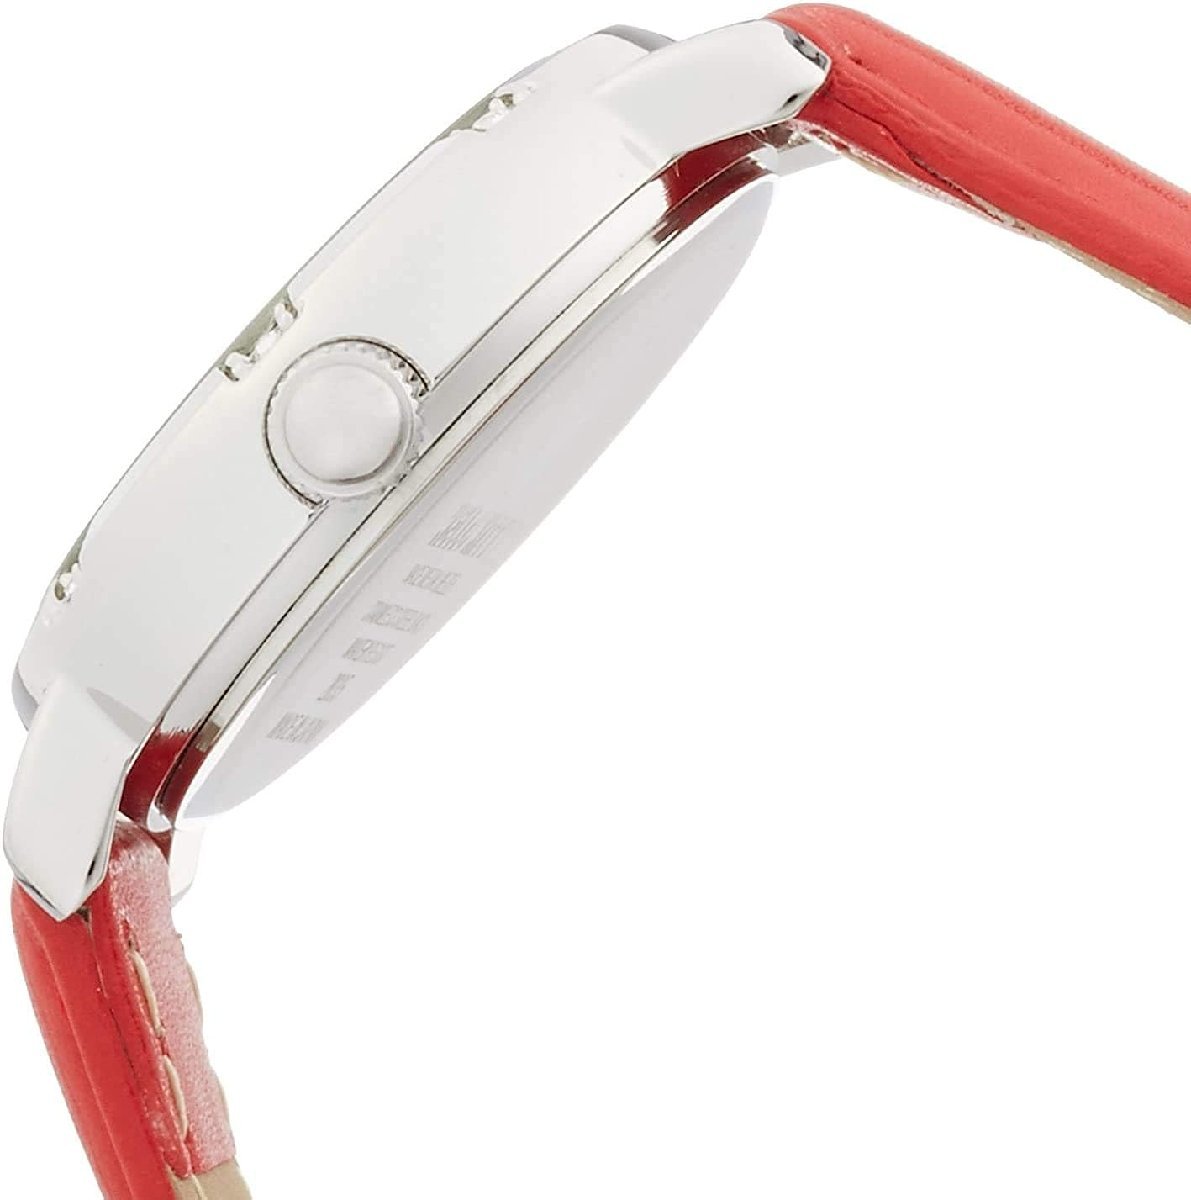  CITIZEN   наручные часы  ...  водонепроницаемый   кожа  ремень   сделано в Японии  000 претензии и возврат товара не принимаются 003   серебристый / красный  4966006058192